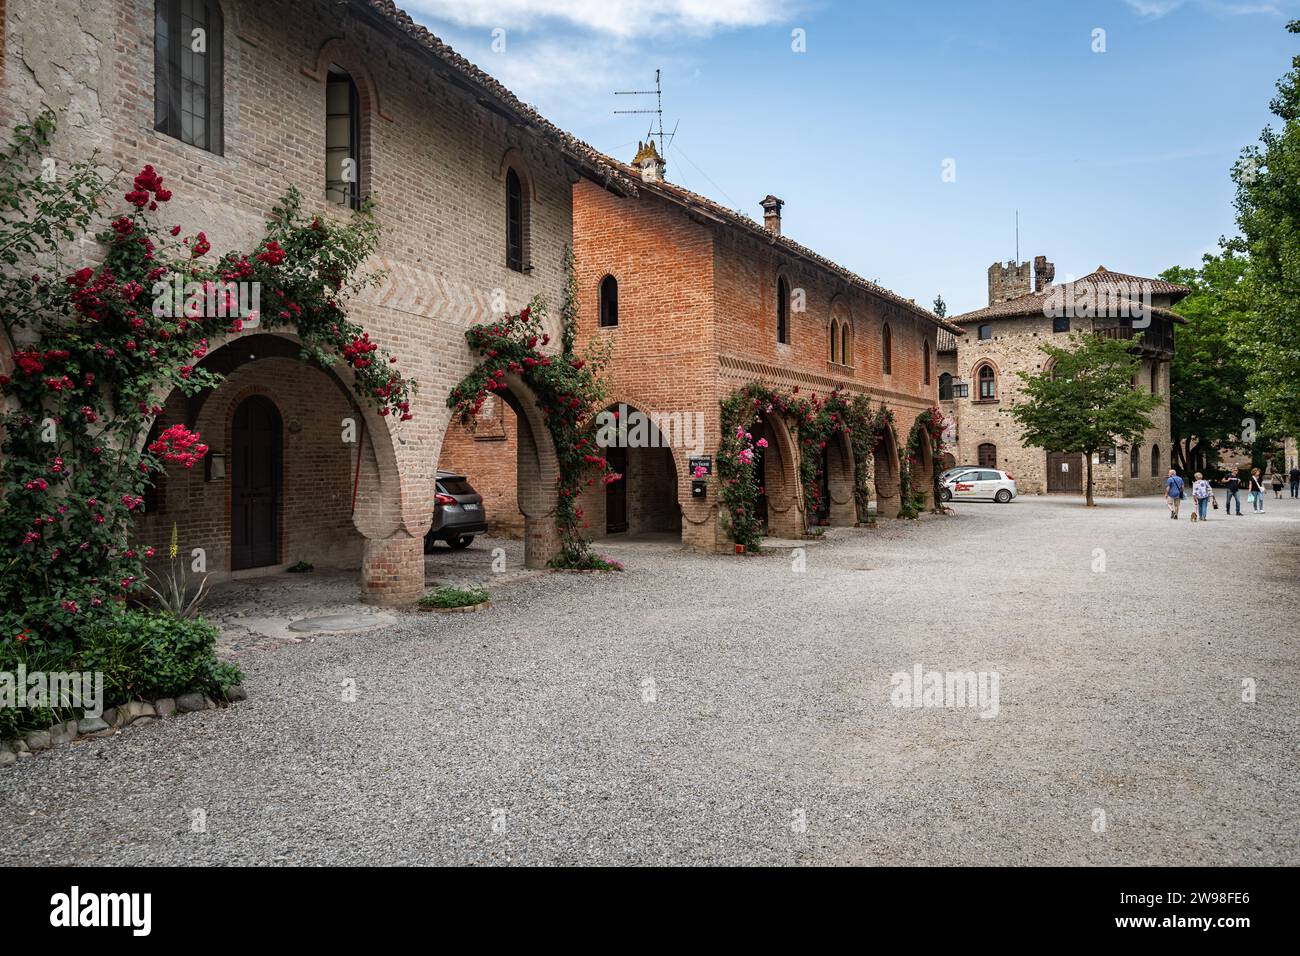 A picturesque village of Grazzano Visconti in Emilia-Romagna, Italy, with historical architecture. Stock Photo